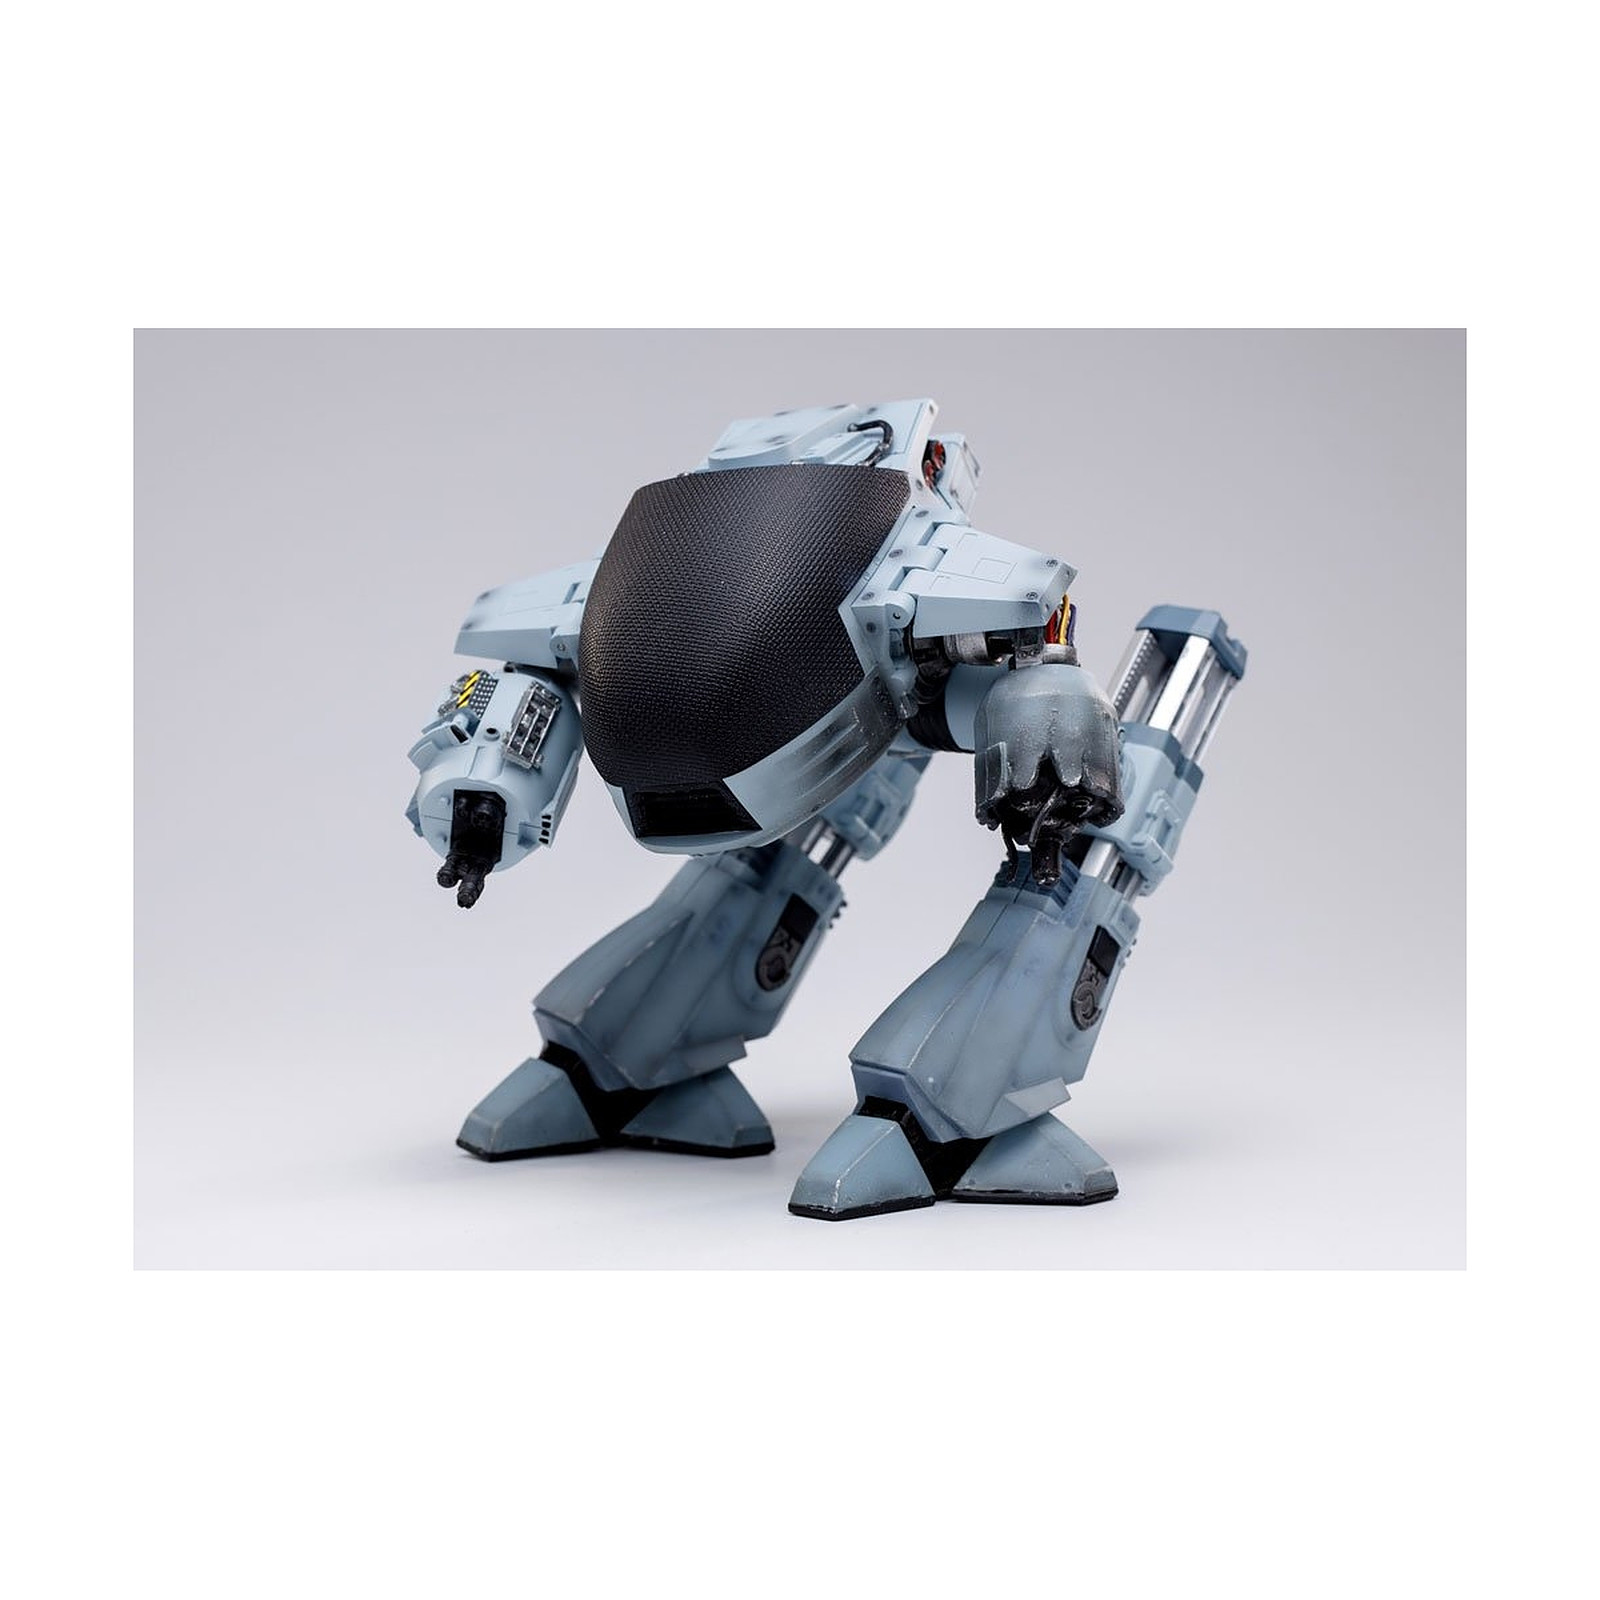 Robocop - Figurine sonore Exquisite Mini 1/18 Battle Damaged ED209 15 cm - Figurines Generique